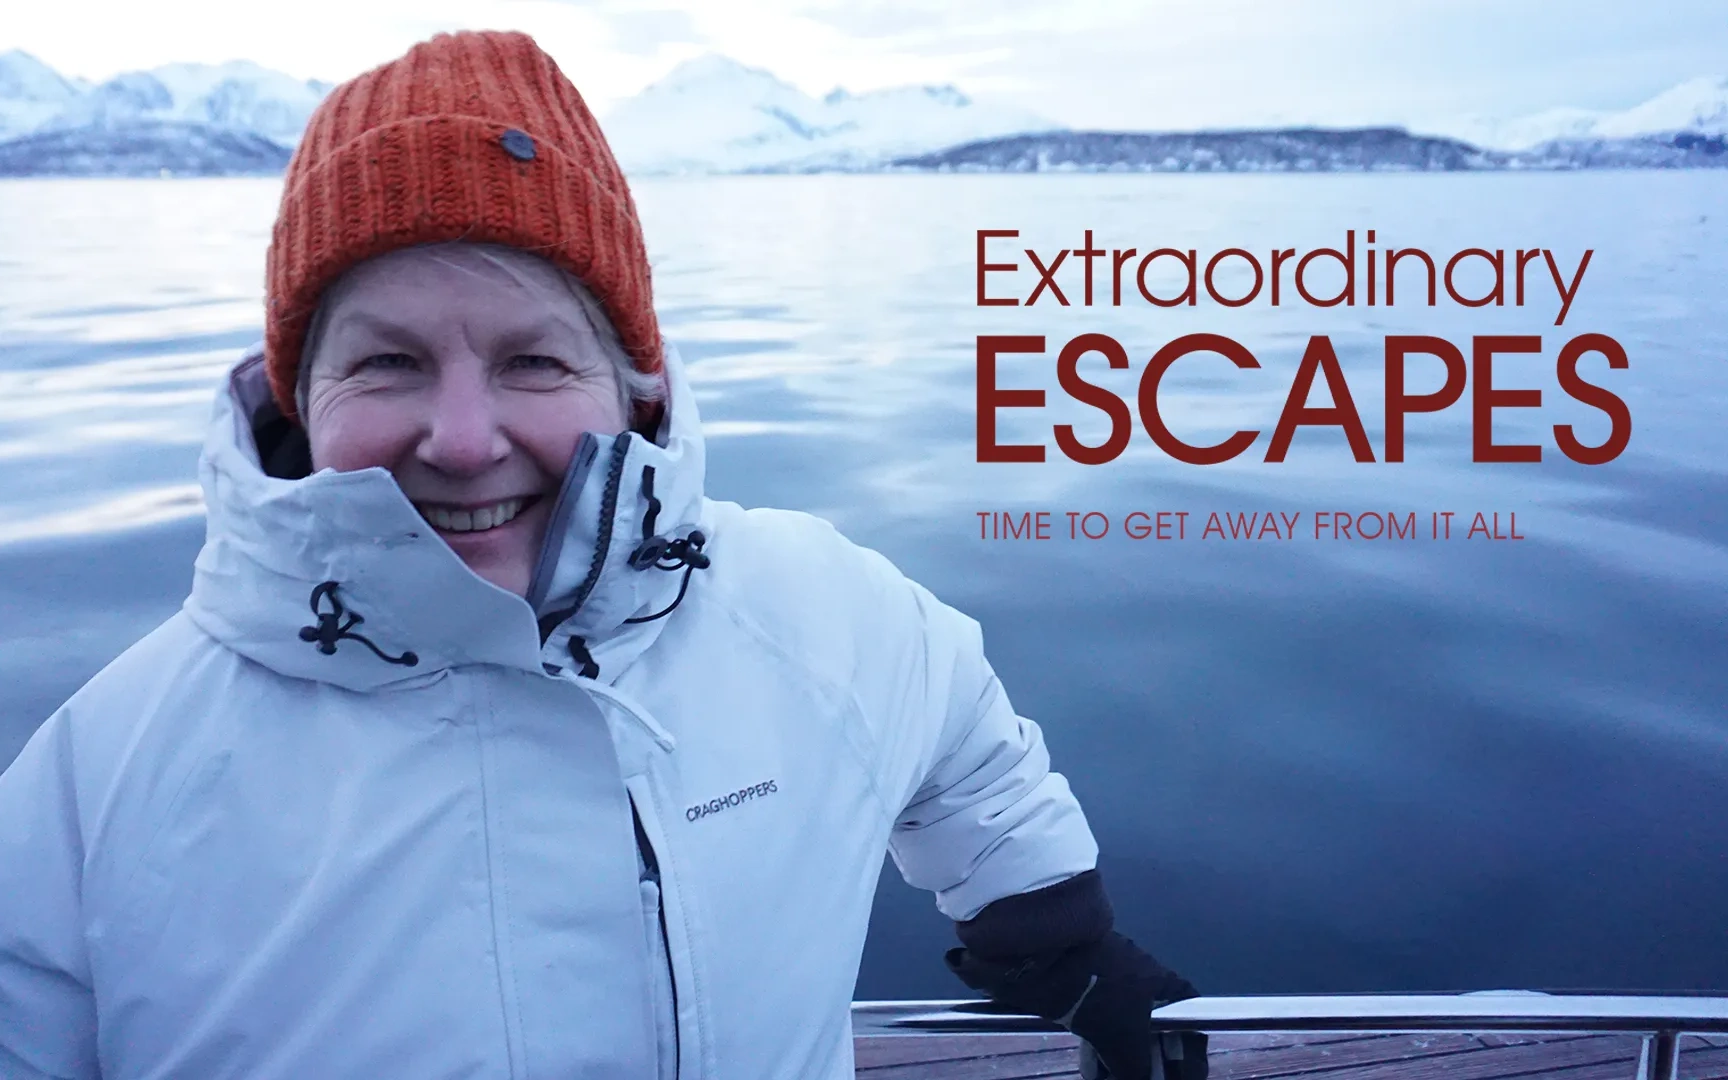 Extraordinary Escapes